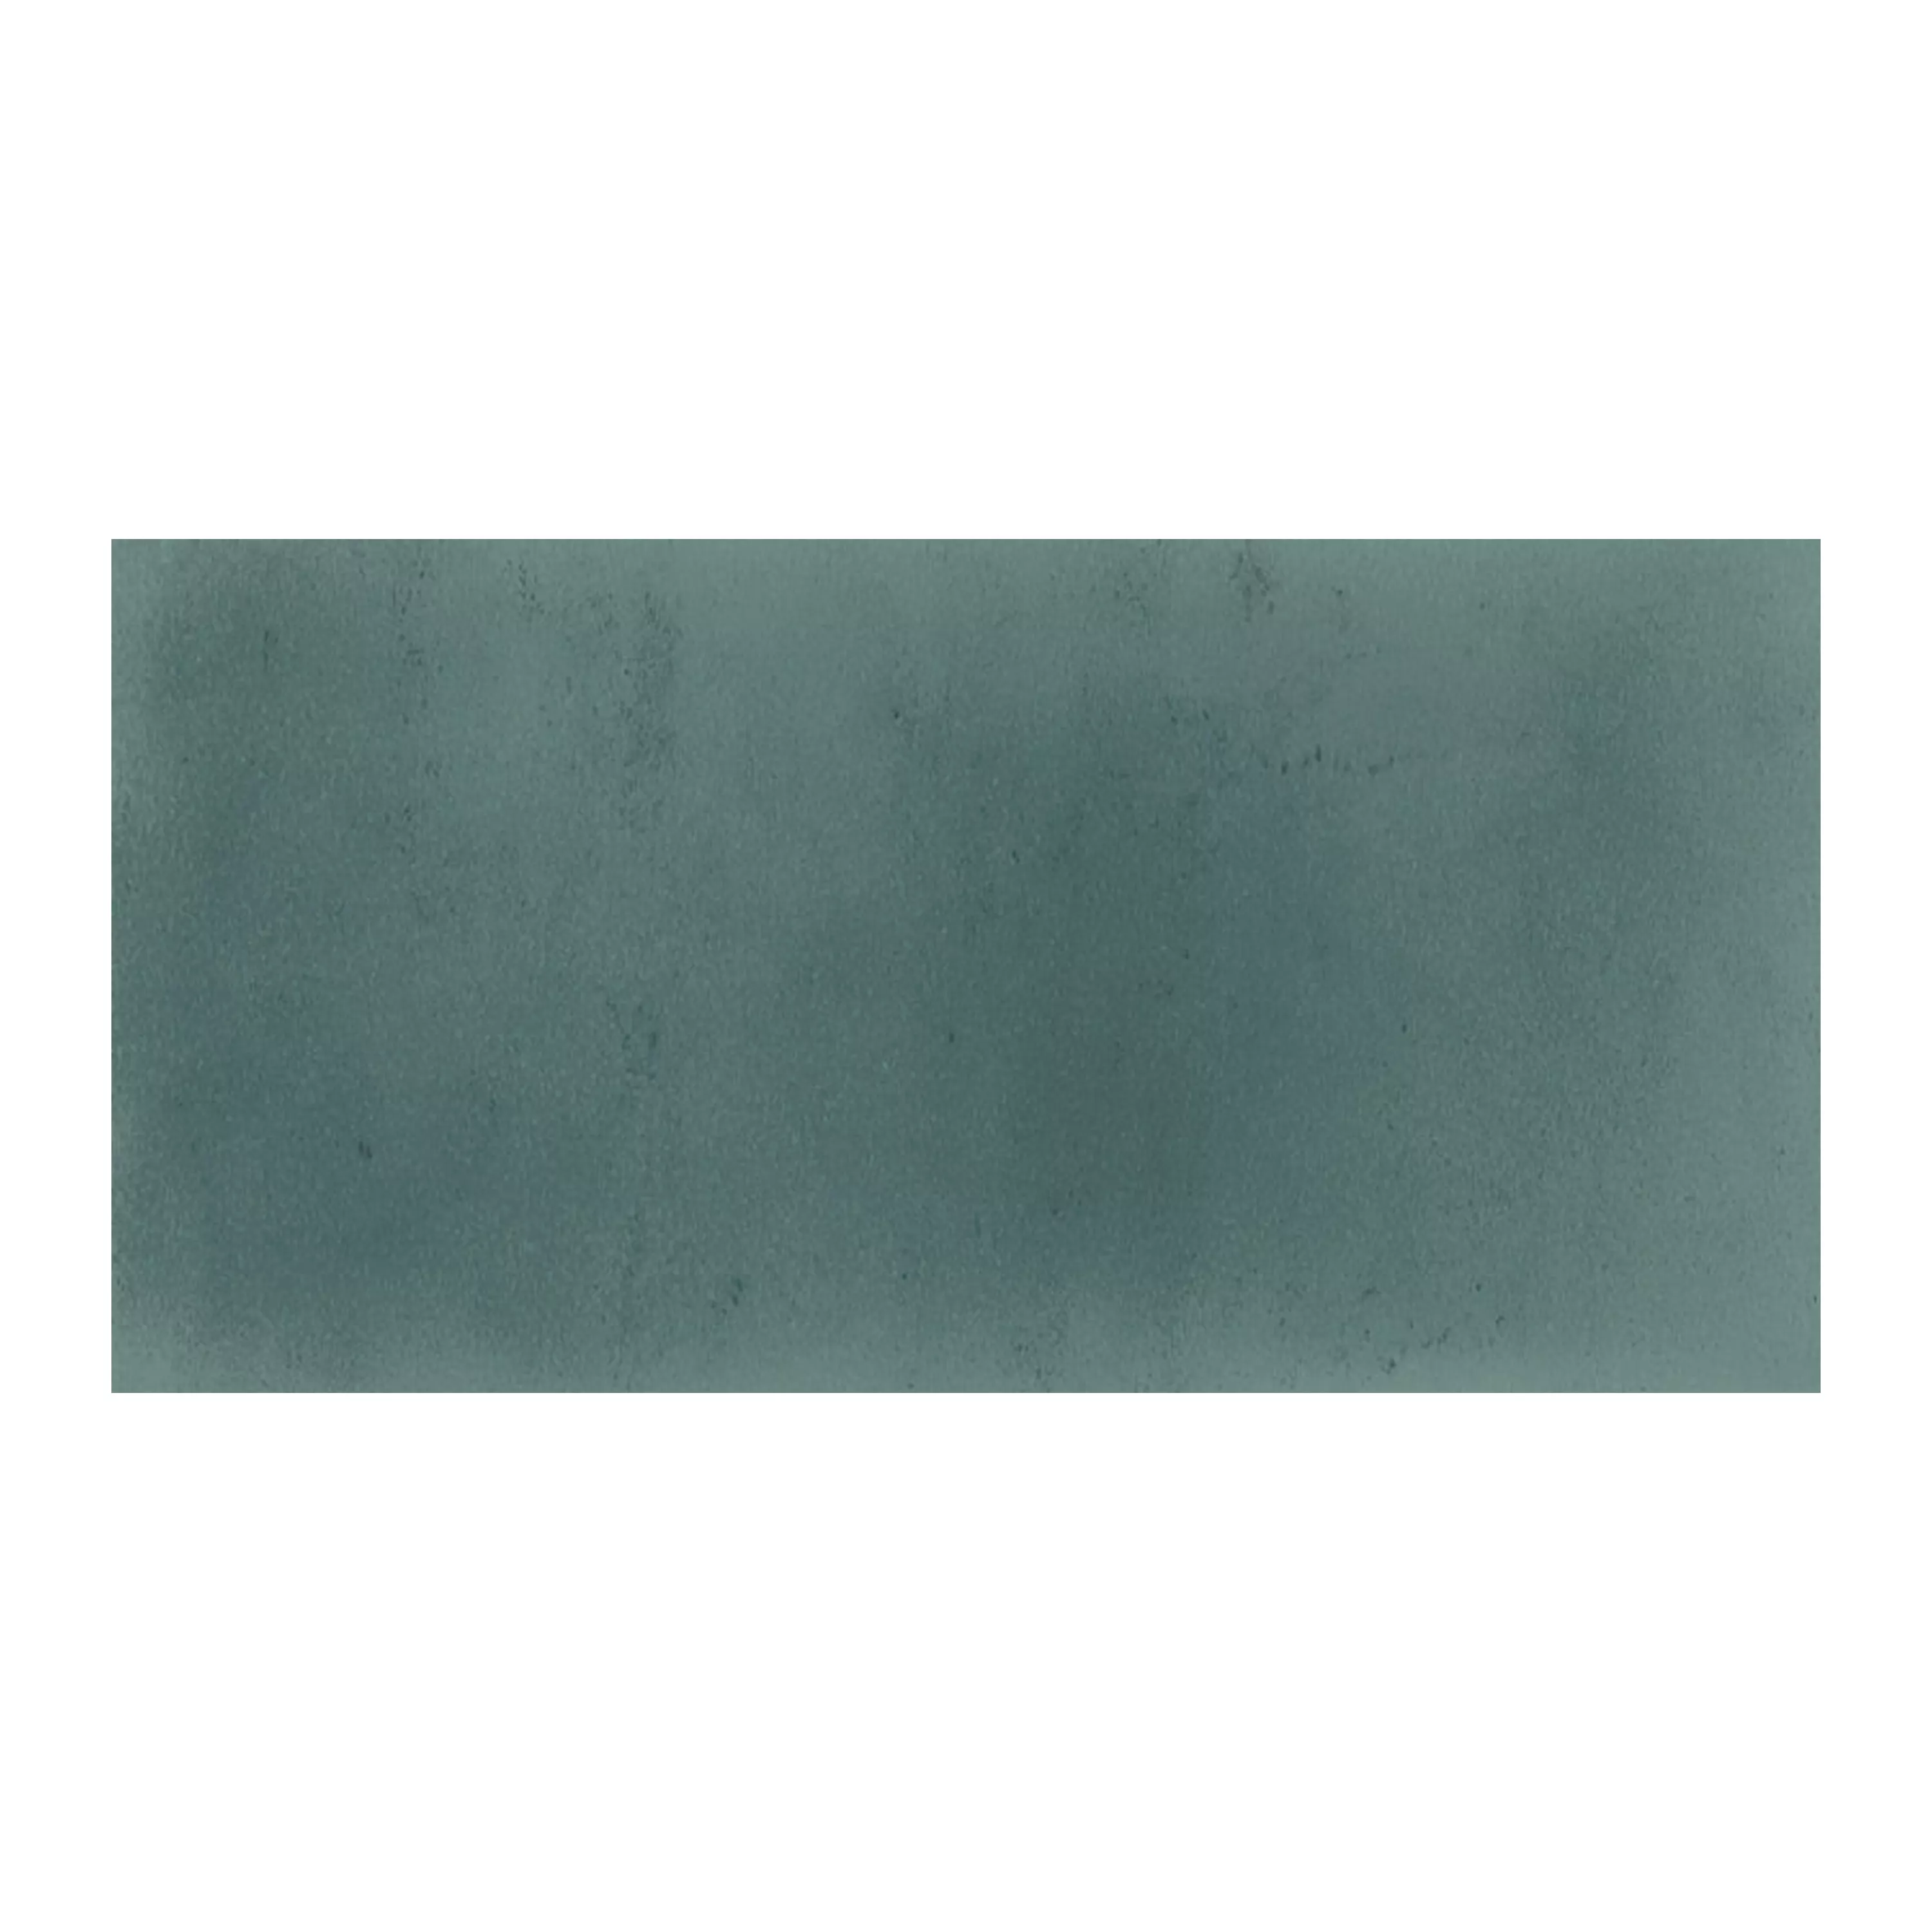 Próbka Płytki Ścienne London Karbowany 7,5x15cm Zielony